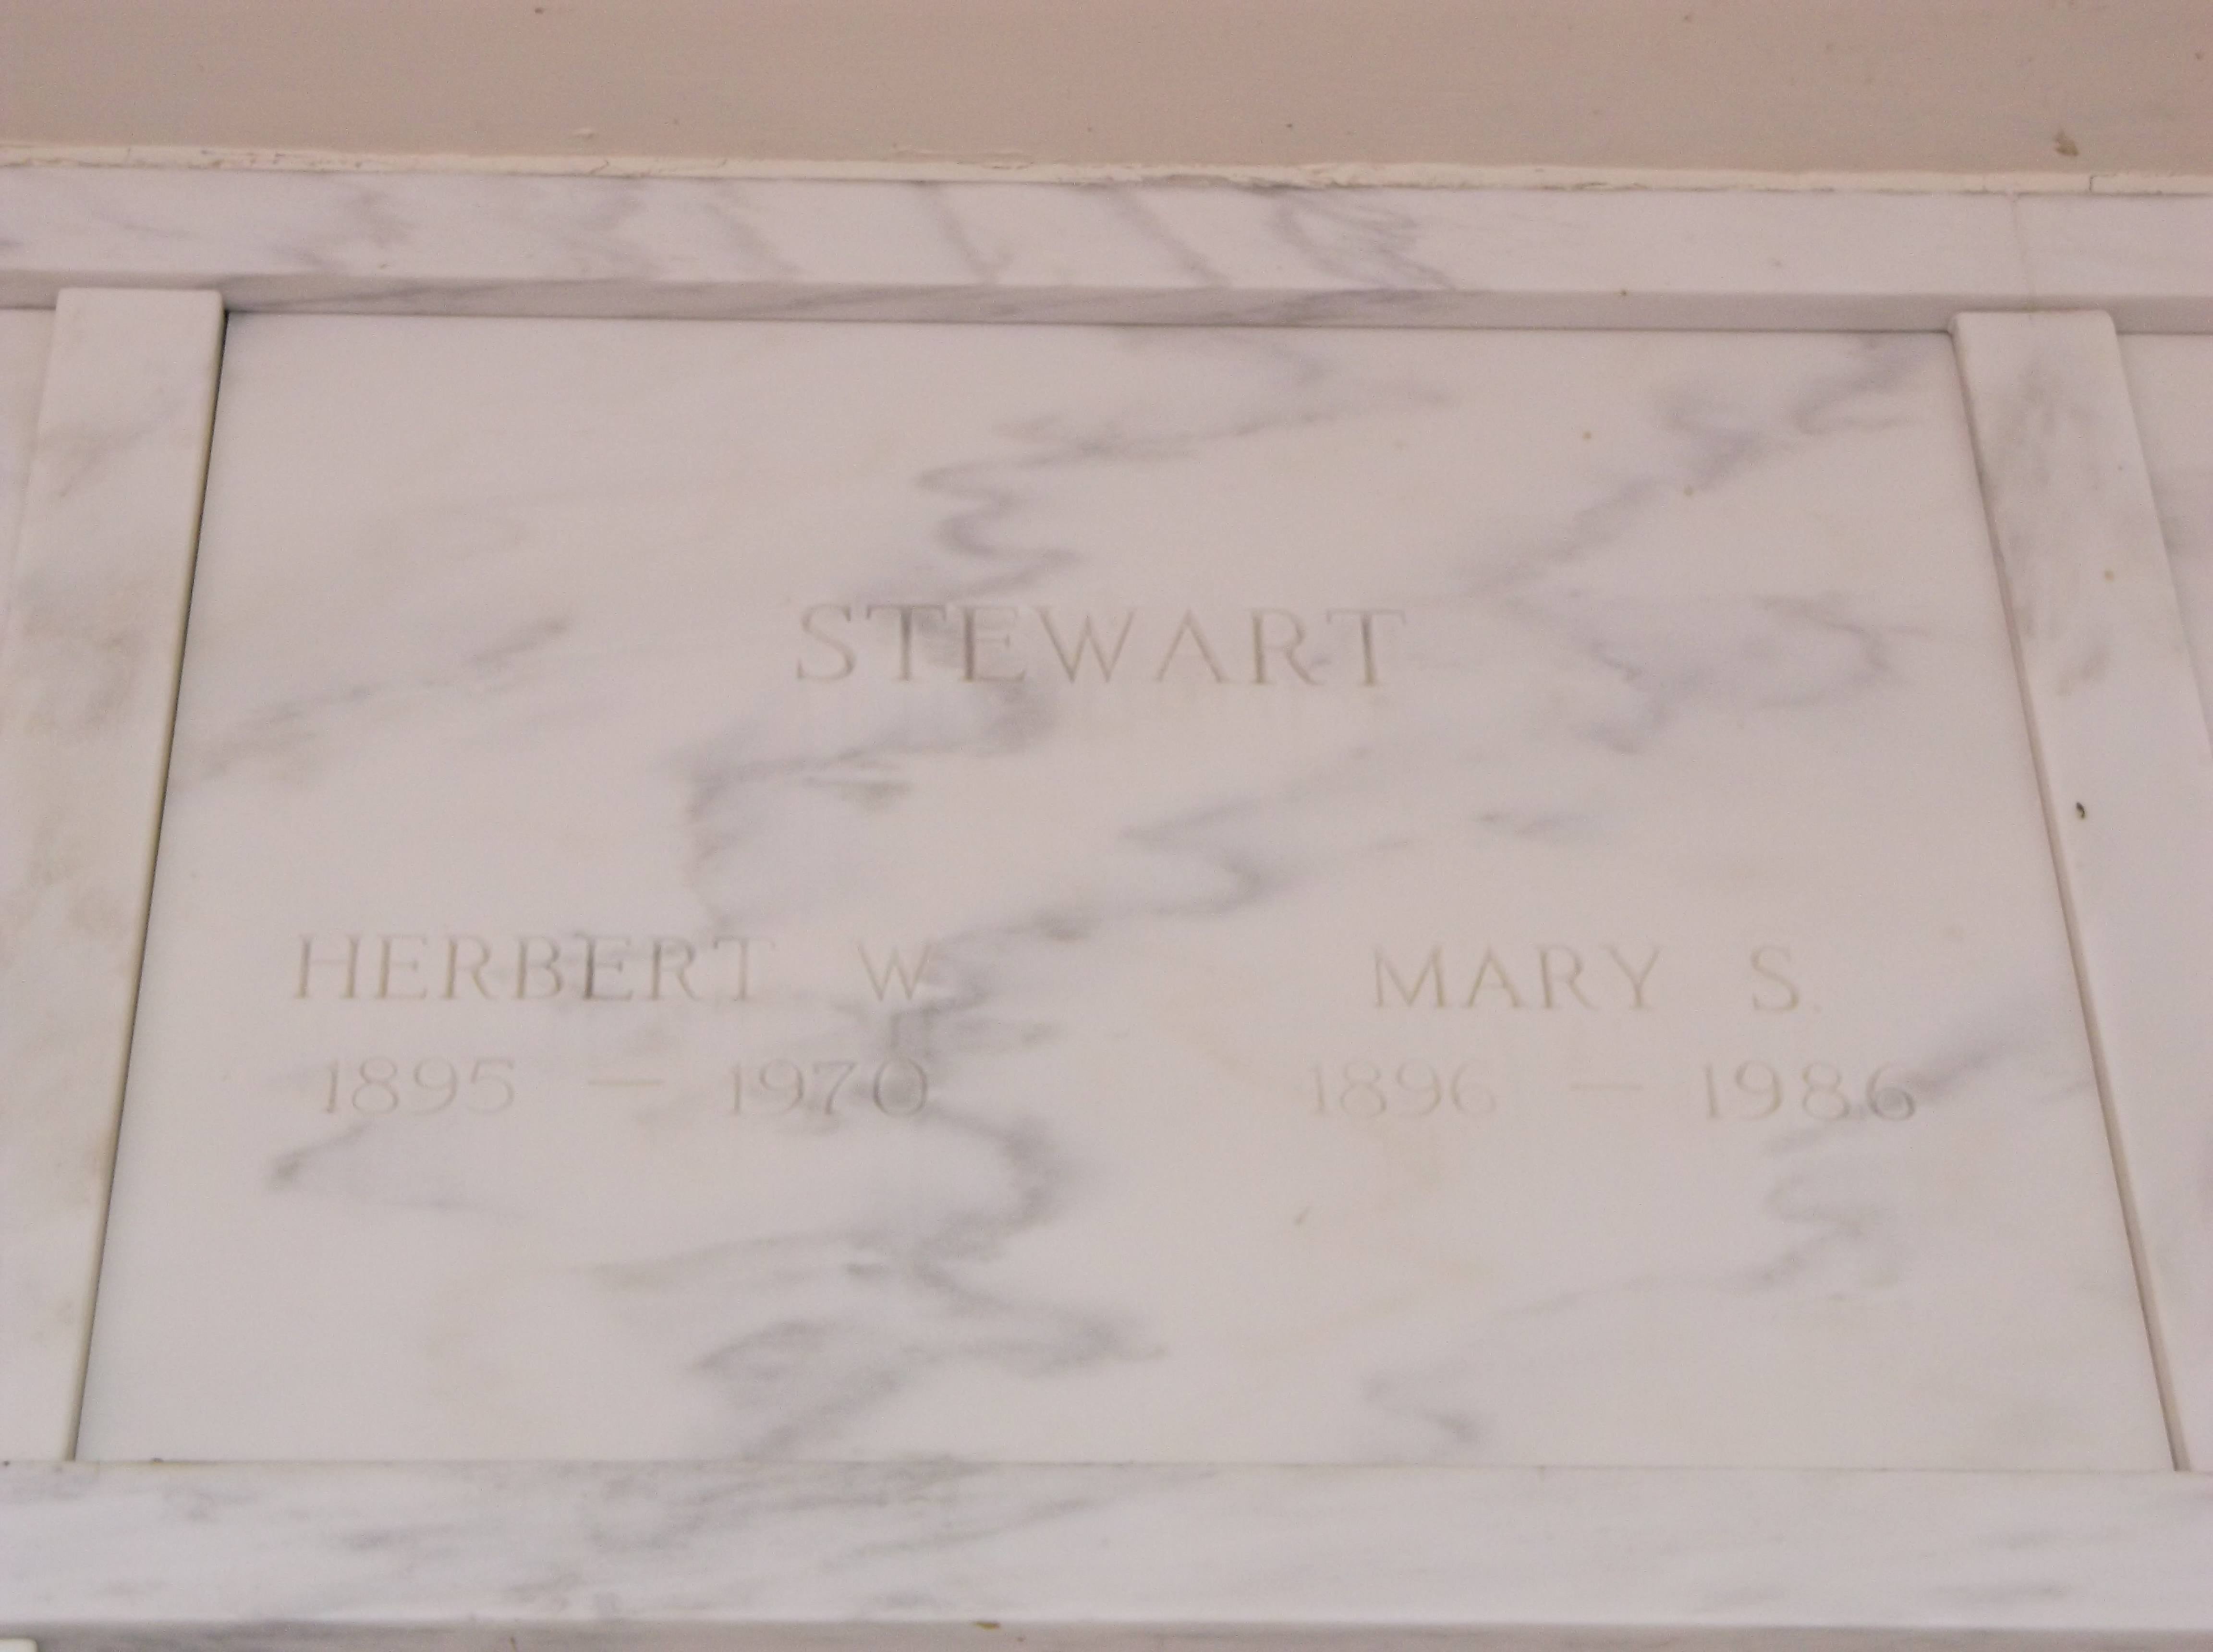 Mary S Stewart